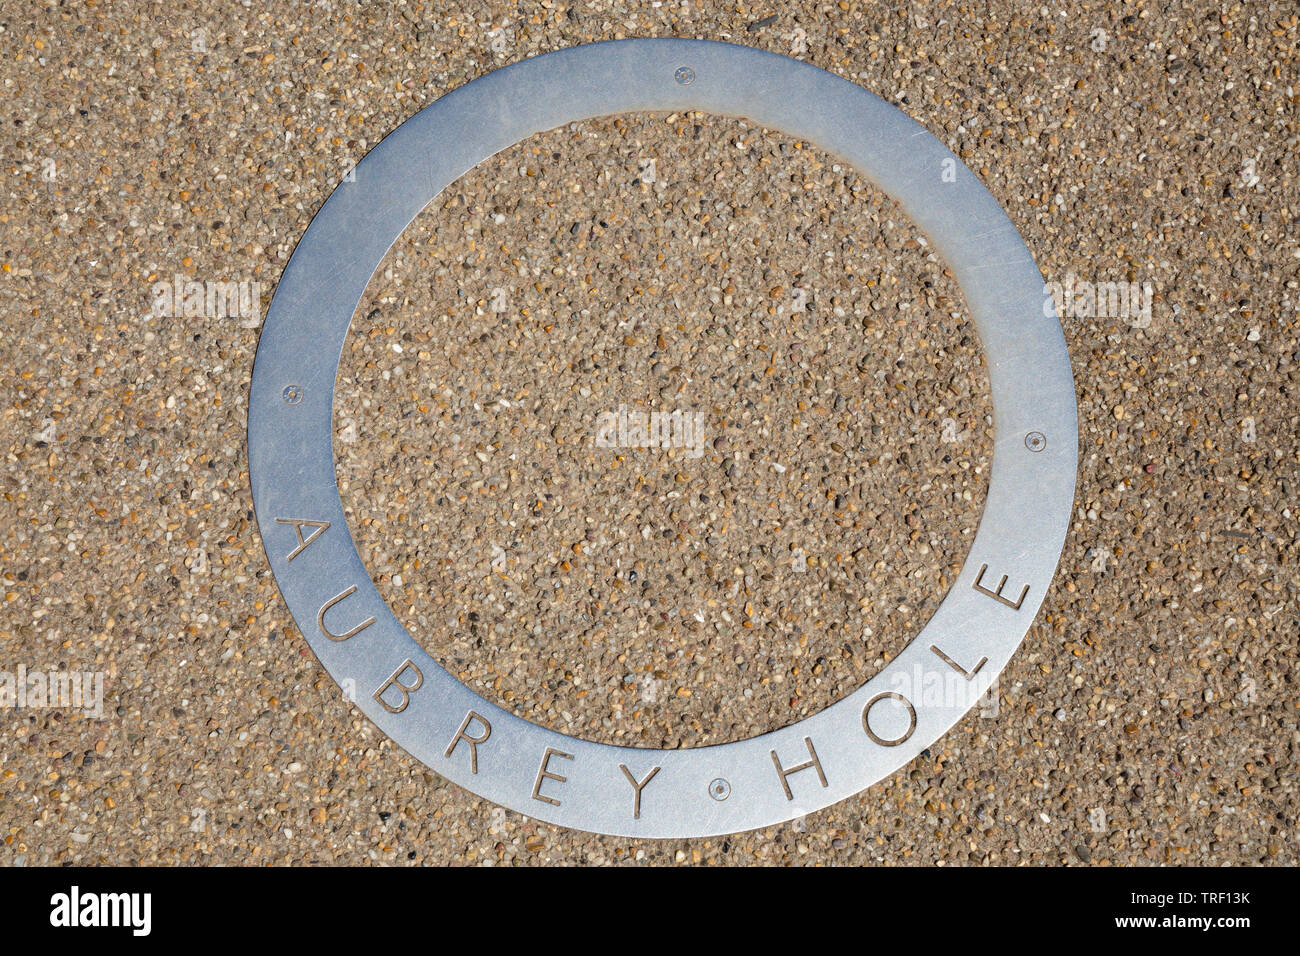 Cerchio / circolare di acciaio inossidabile Aubrey foro marcatore sul percorso turistico che circonda il sito di Stonehenge. Amesbury, Wiltshire, Regno Unito. (109) Foto Stock